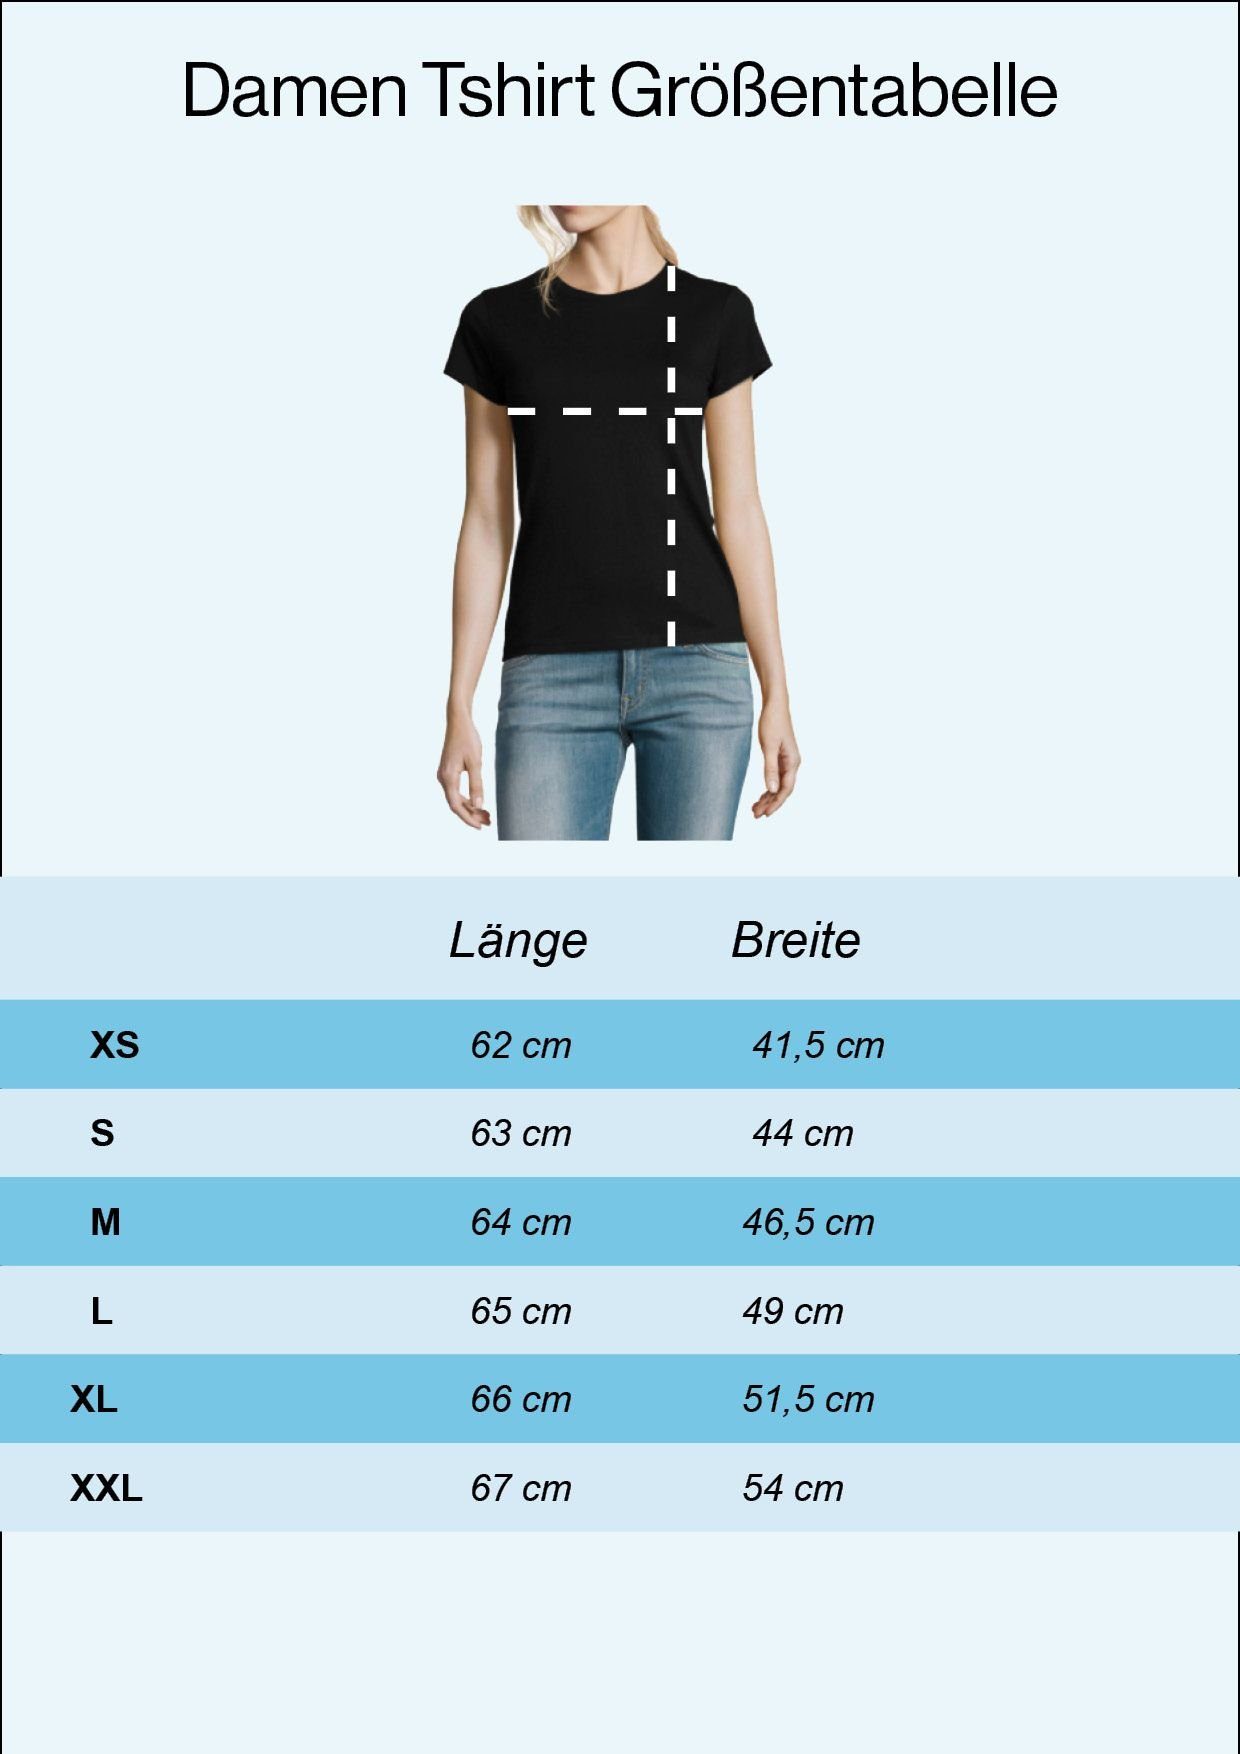 Damen umgekehrt Grau T-Shirt Print Mit Po Designz Sumsi Optimismus Youth Shirt heißt Mit modischem